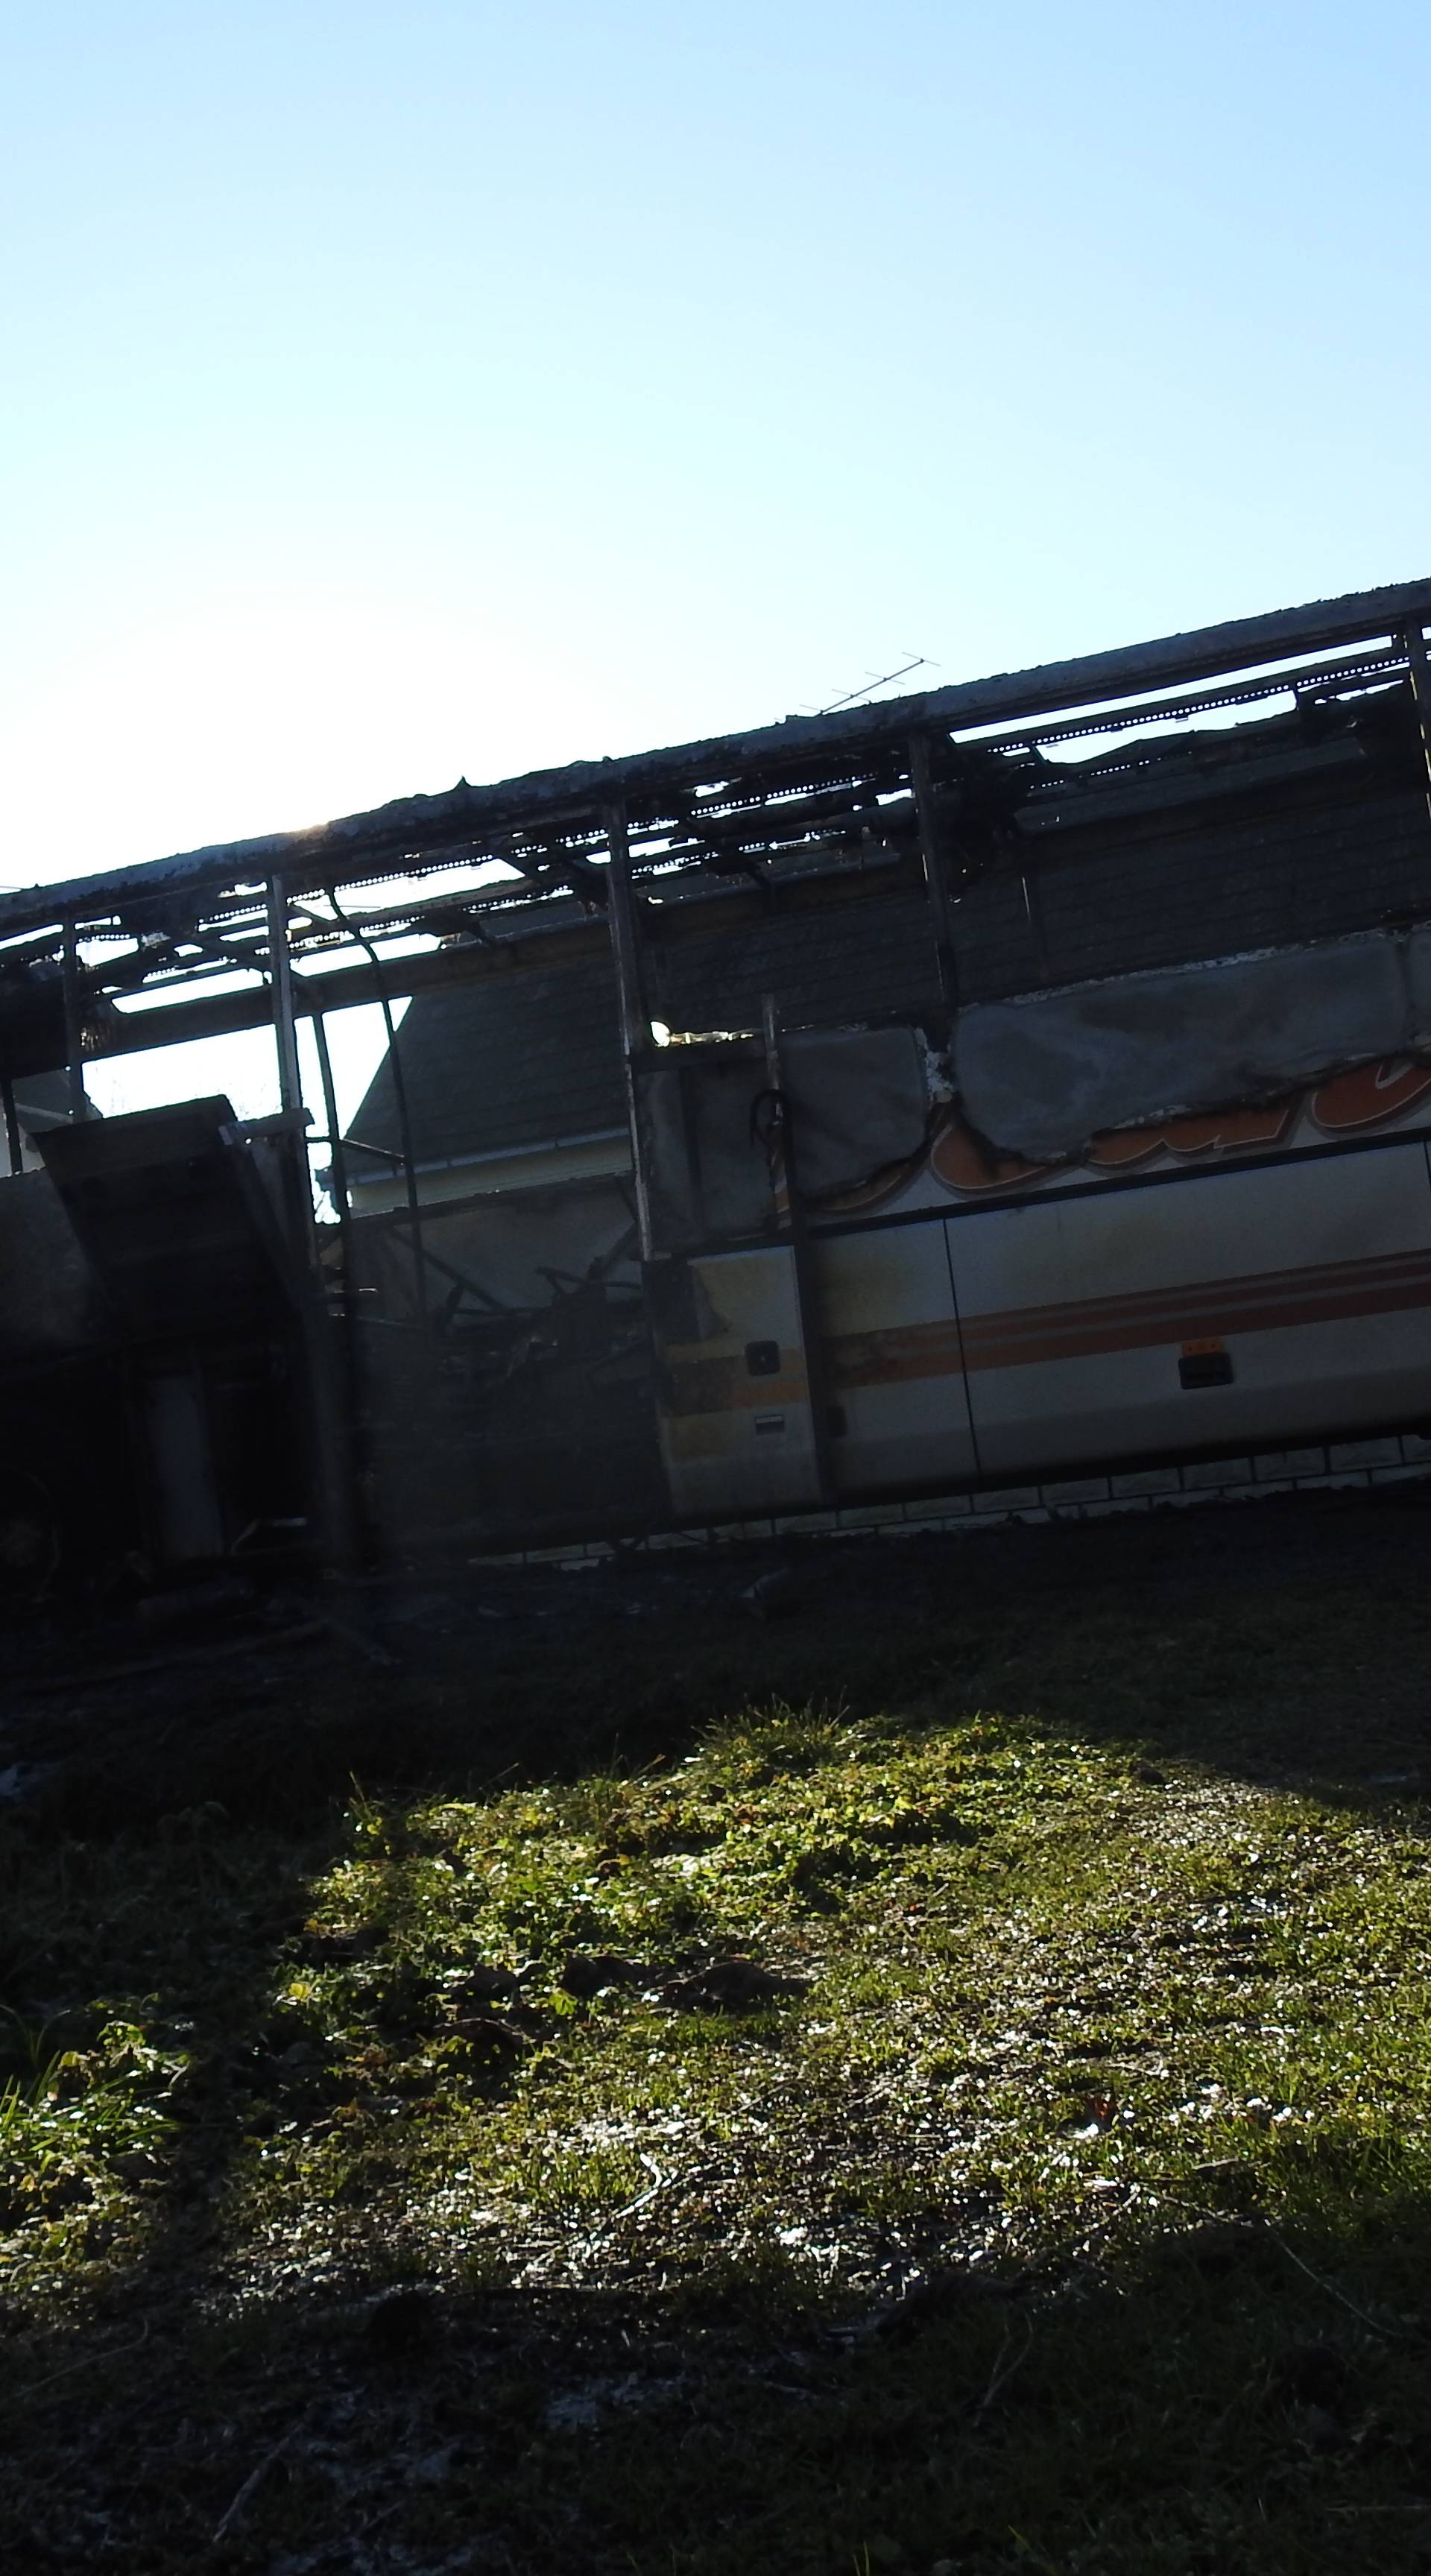 Video: 'Brzo, svi van!' Izgorio školski autobus kod Garešnice